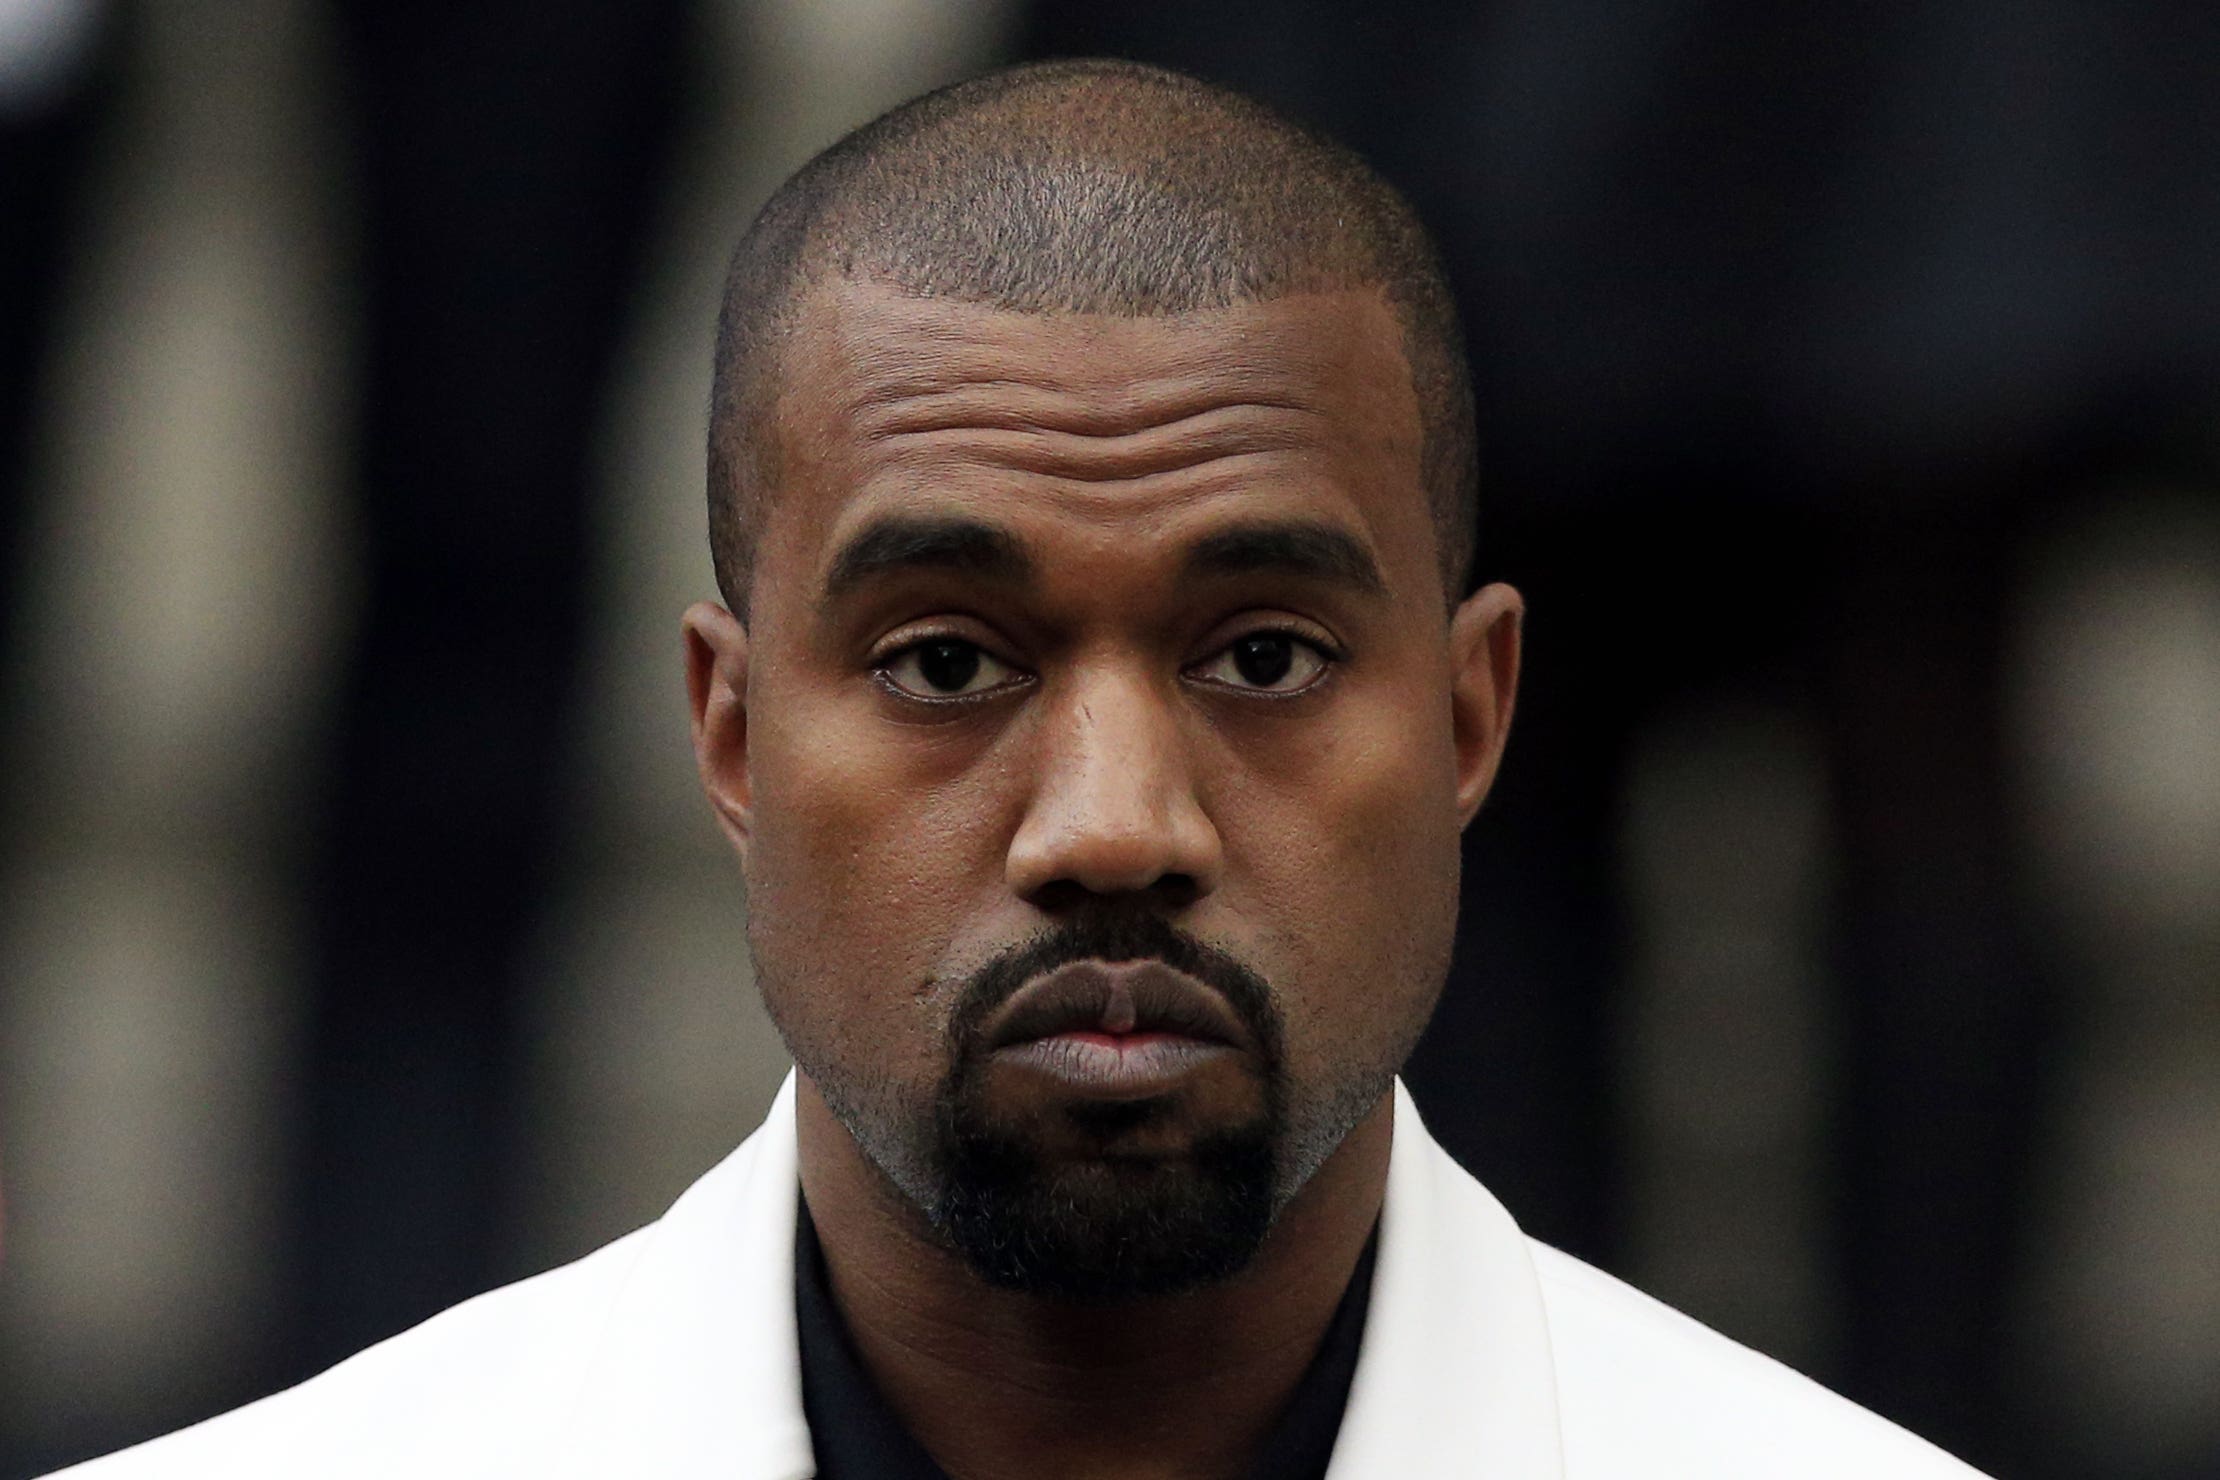 Kanye West ha sido abrazado por “extraños aliados” tras sus declaraciones antisemitas